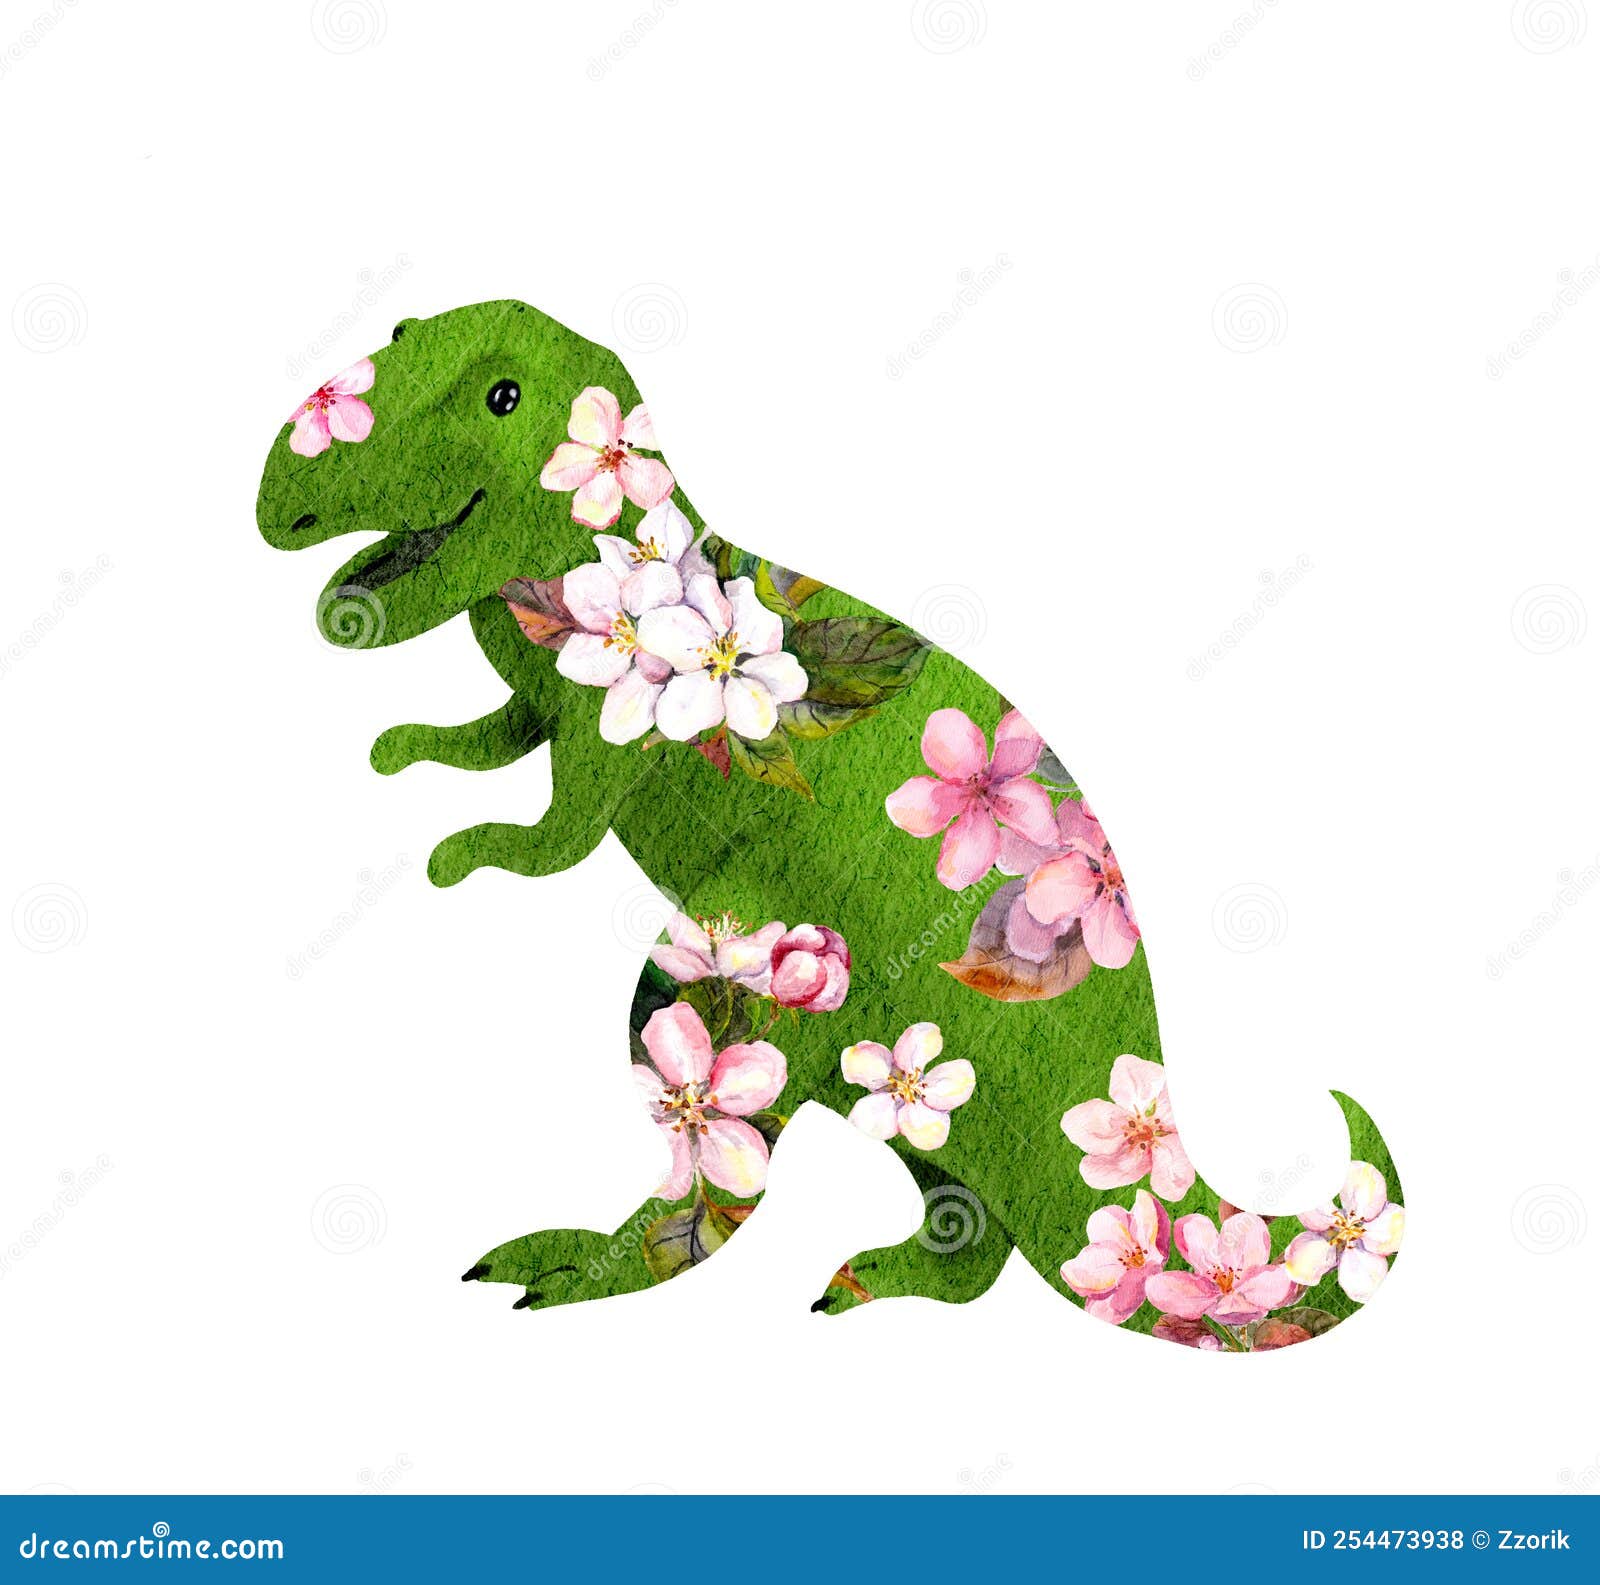 personagem de desenho animado de dinossauro rosa em fundo branco